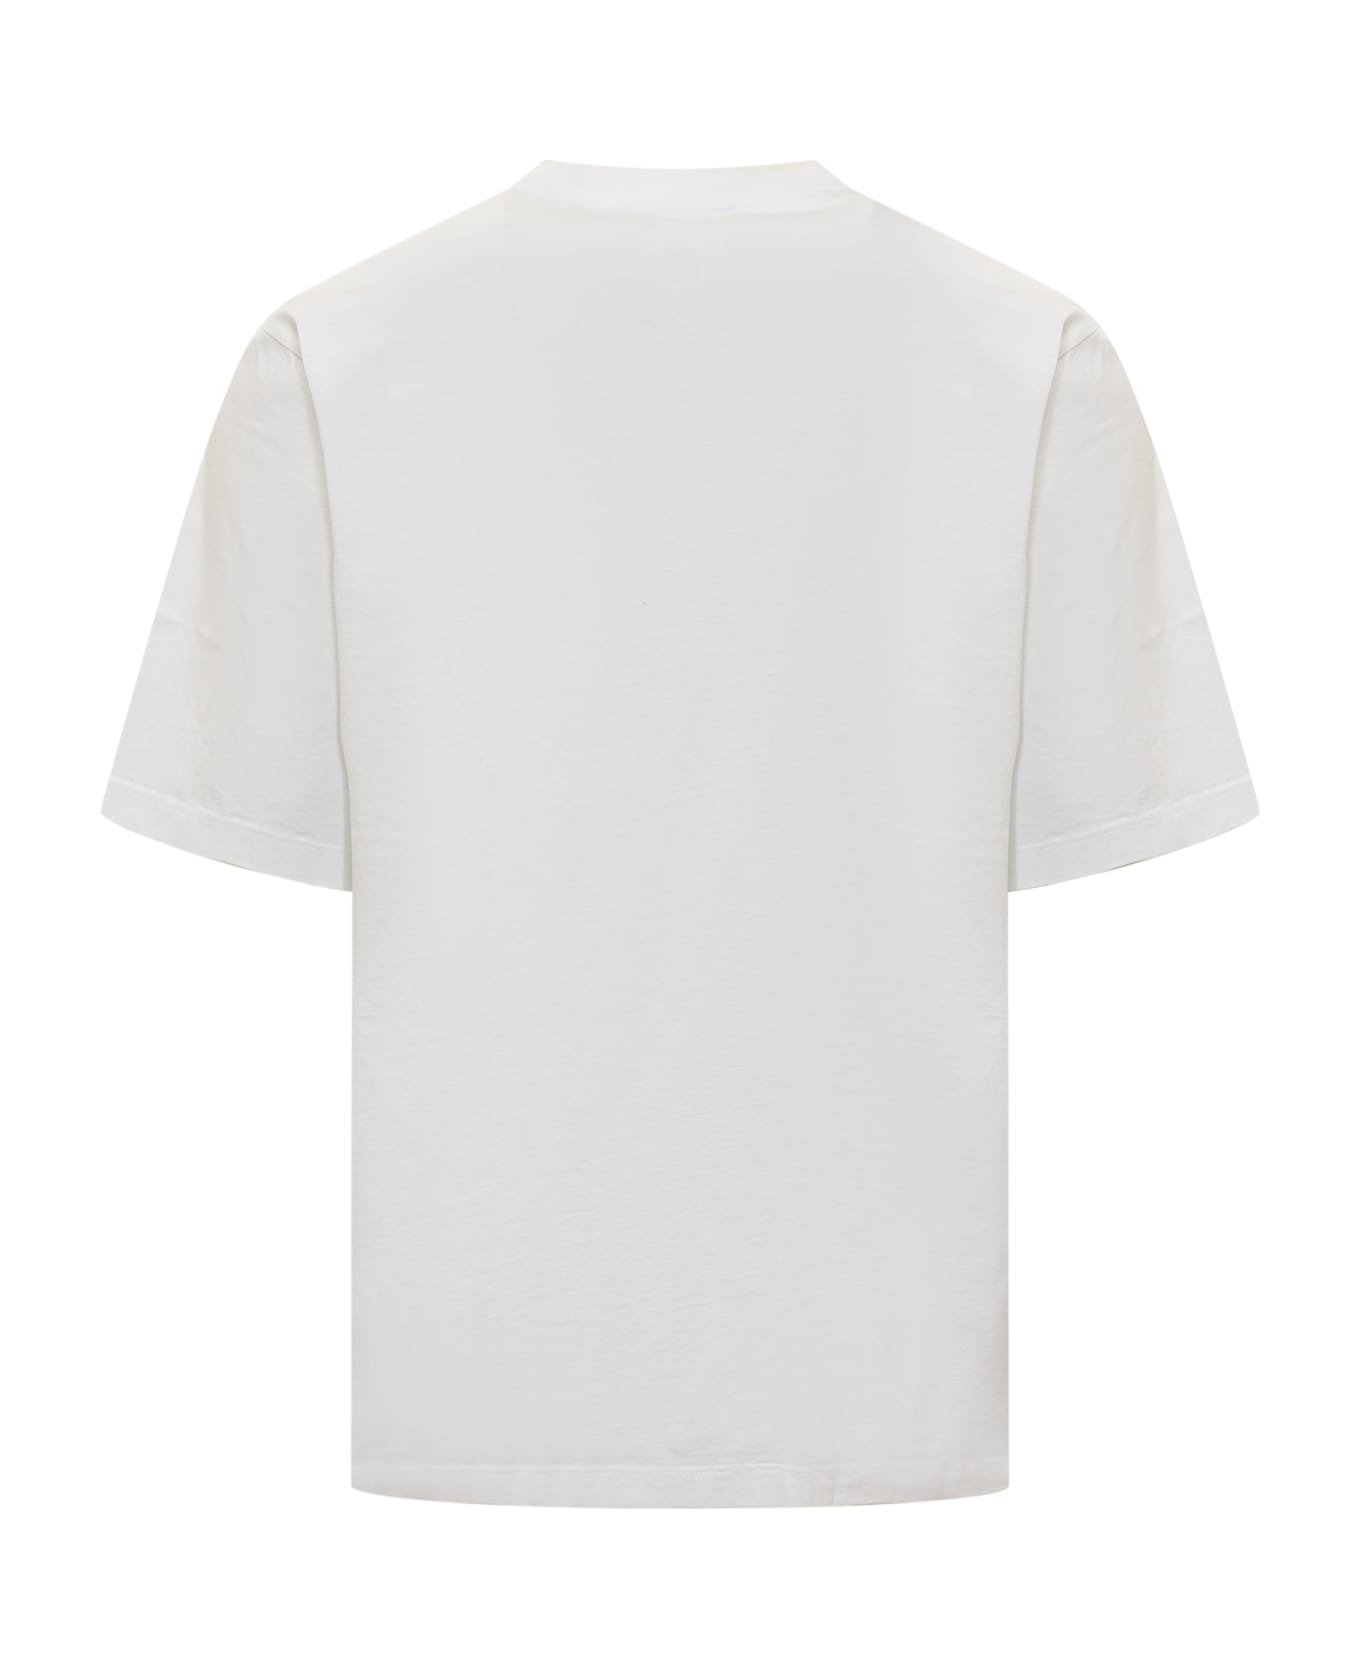 Dsquared2 Slutty Beach T-shirt - WHITE